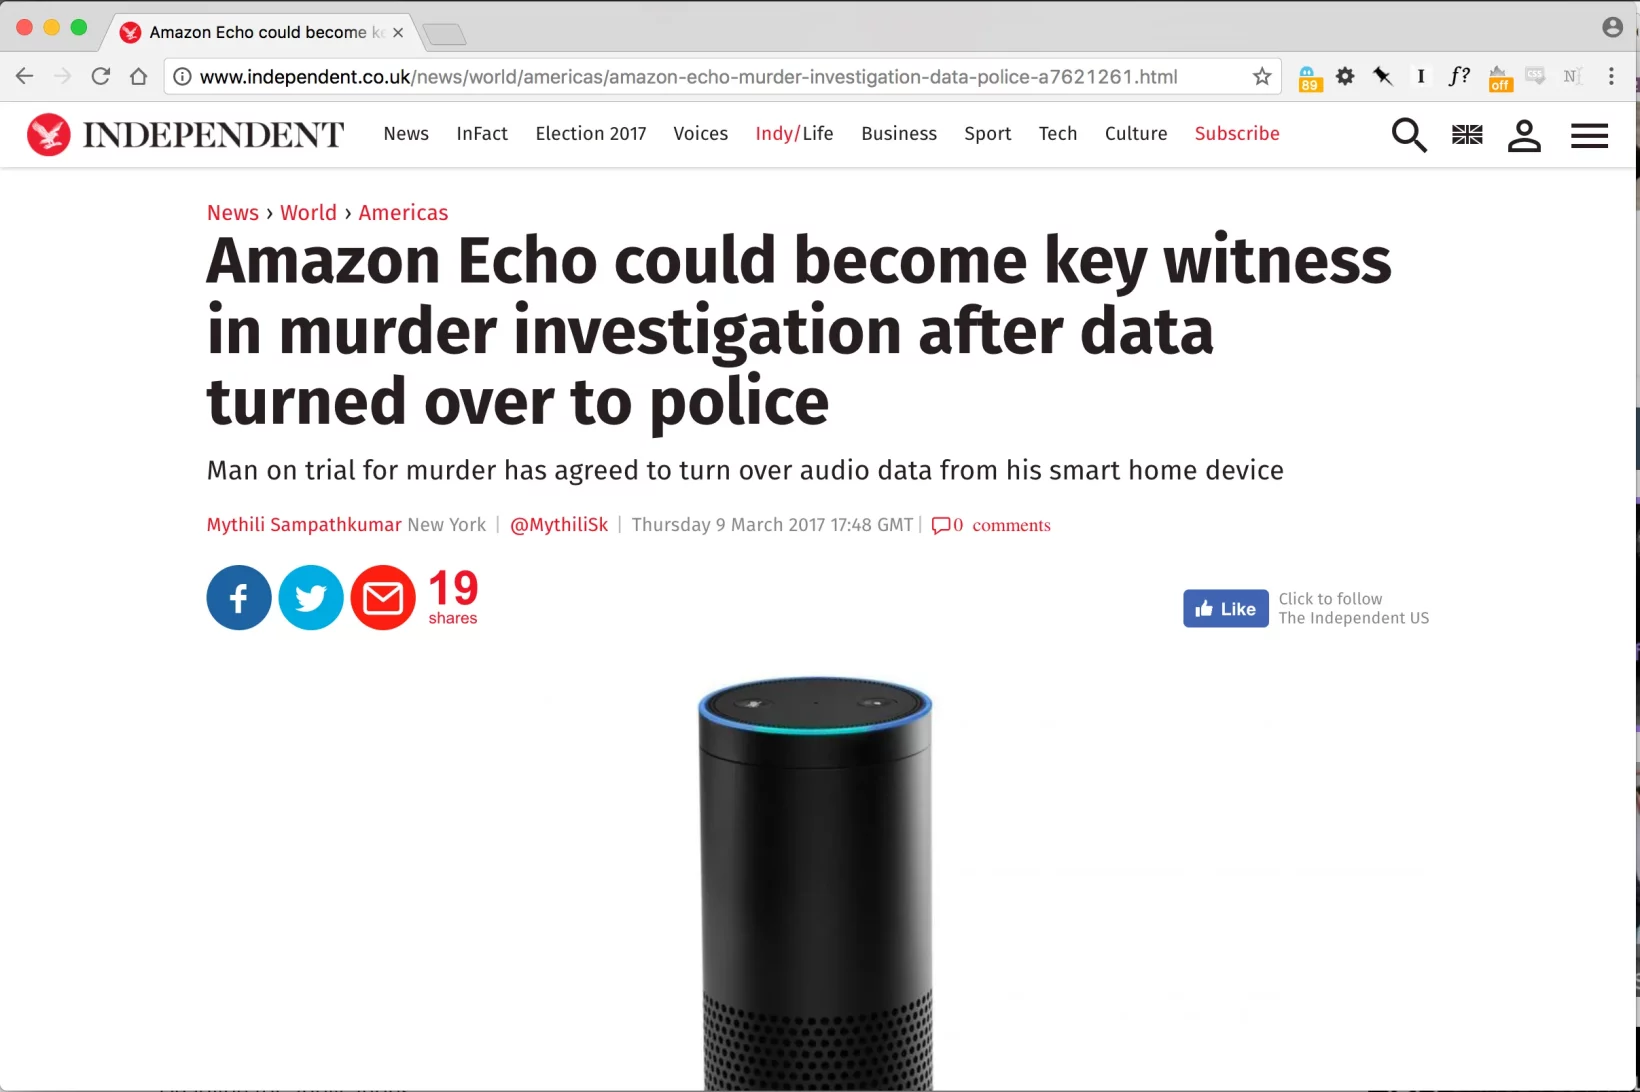 Amazon Echo in murder case